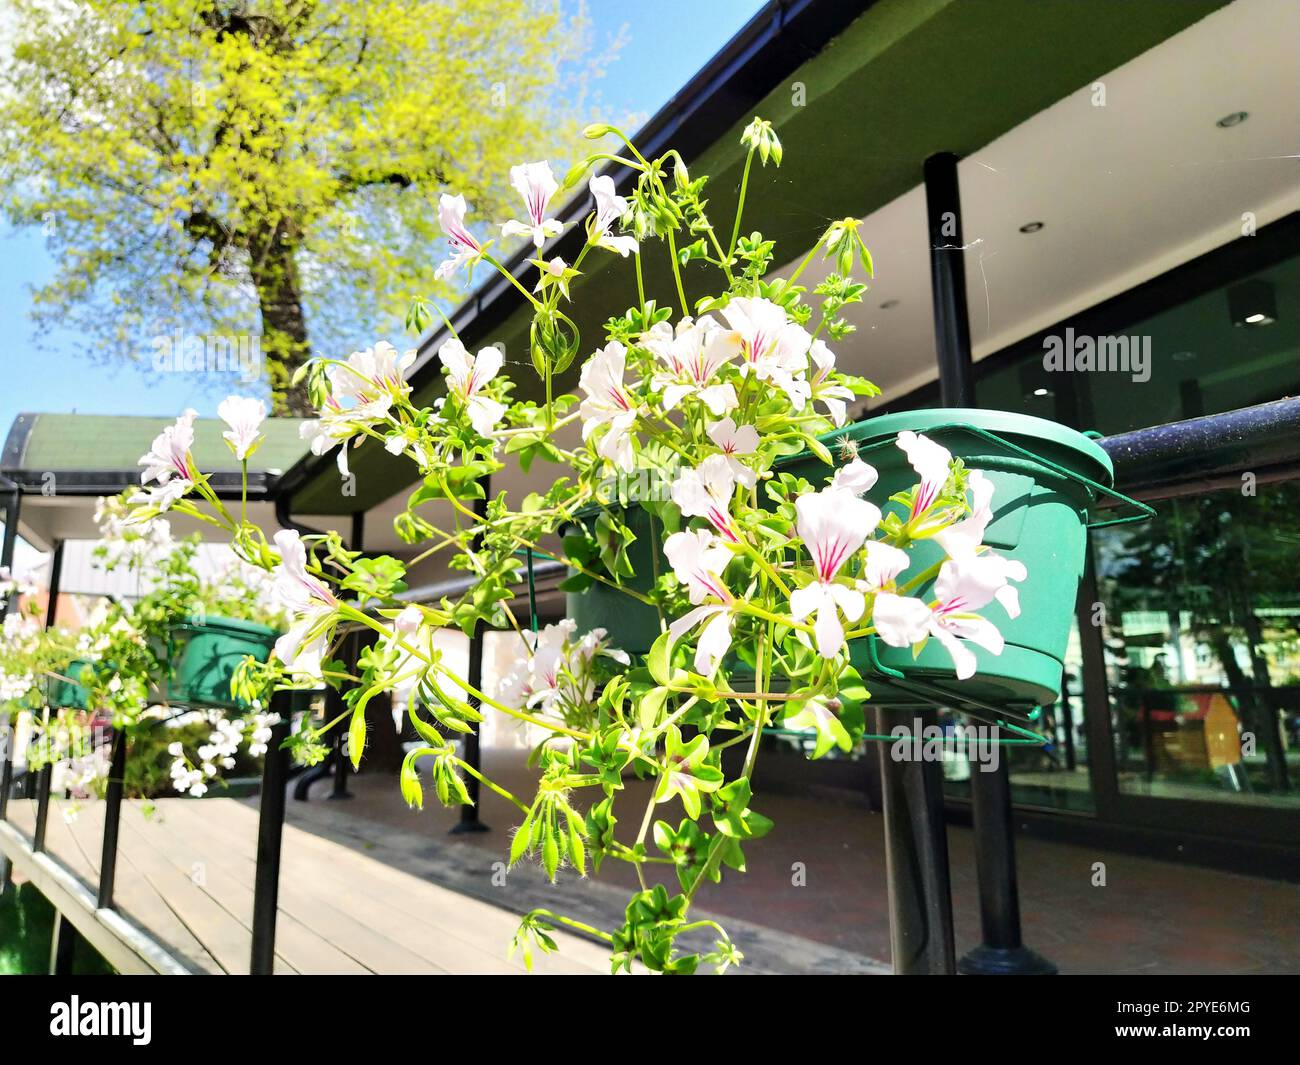 Pelargonium ist eine Gattung von Pflanzen der Familie Geraniumaceae. Weißes Efeu-Geranium mit roten Venen auf Blütenblättern. Blumenkasten. Dekoration von Balkonen, Fenstern, Fassaden von Häusern, Straßen, Rasen. Cranesbill. Stockfoto